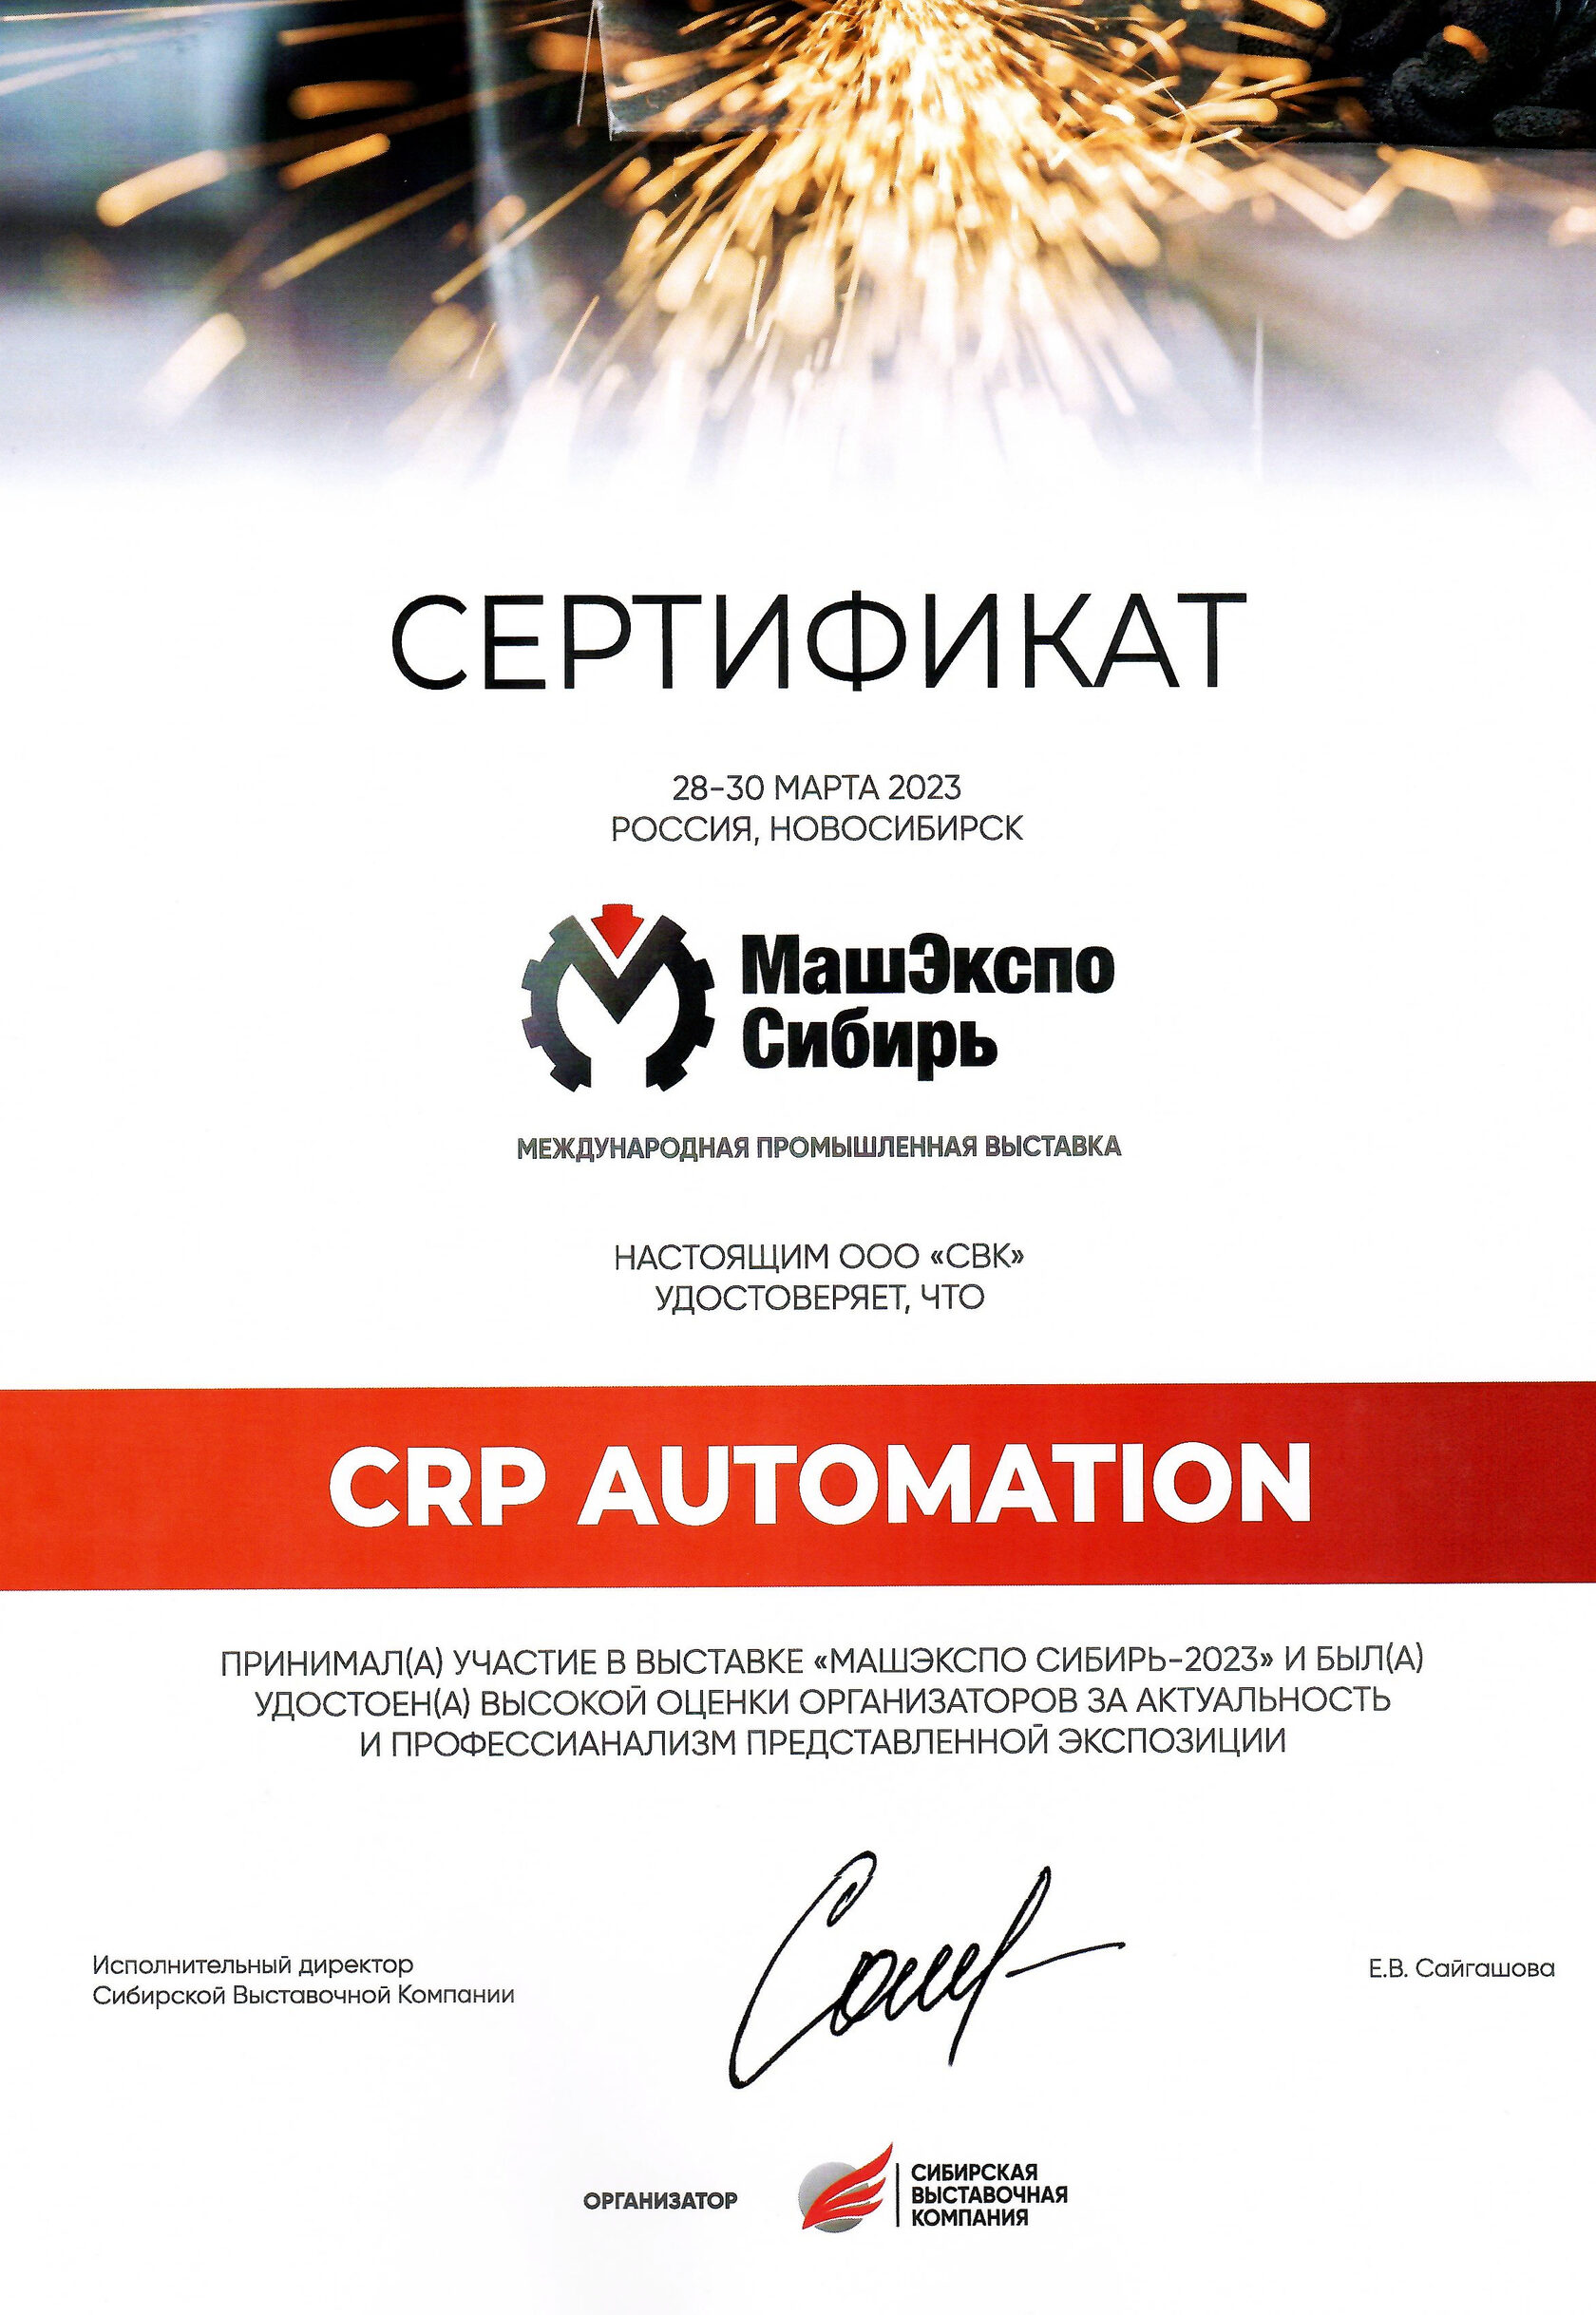 Диплом выставка МашЭкспо промышленные роботы CRP